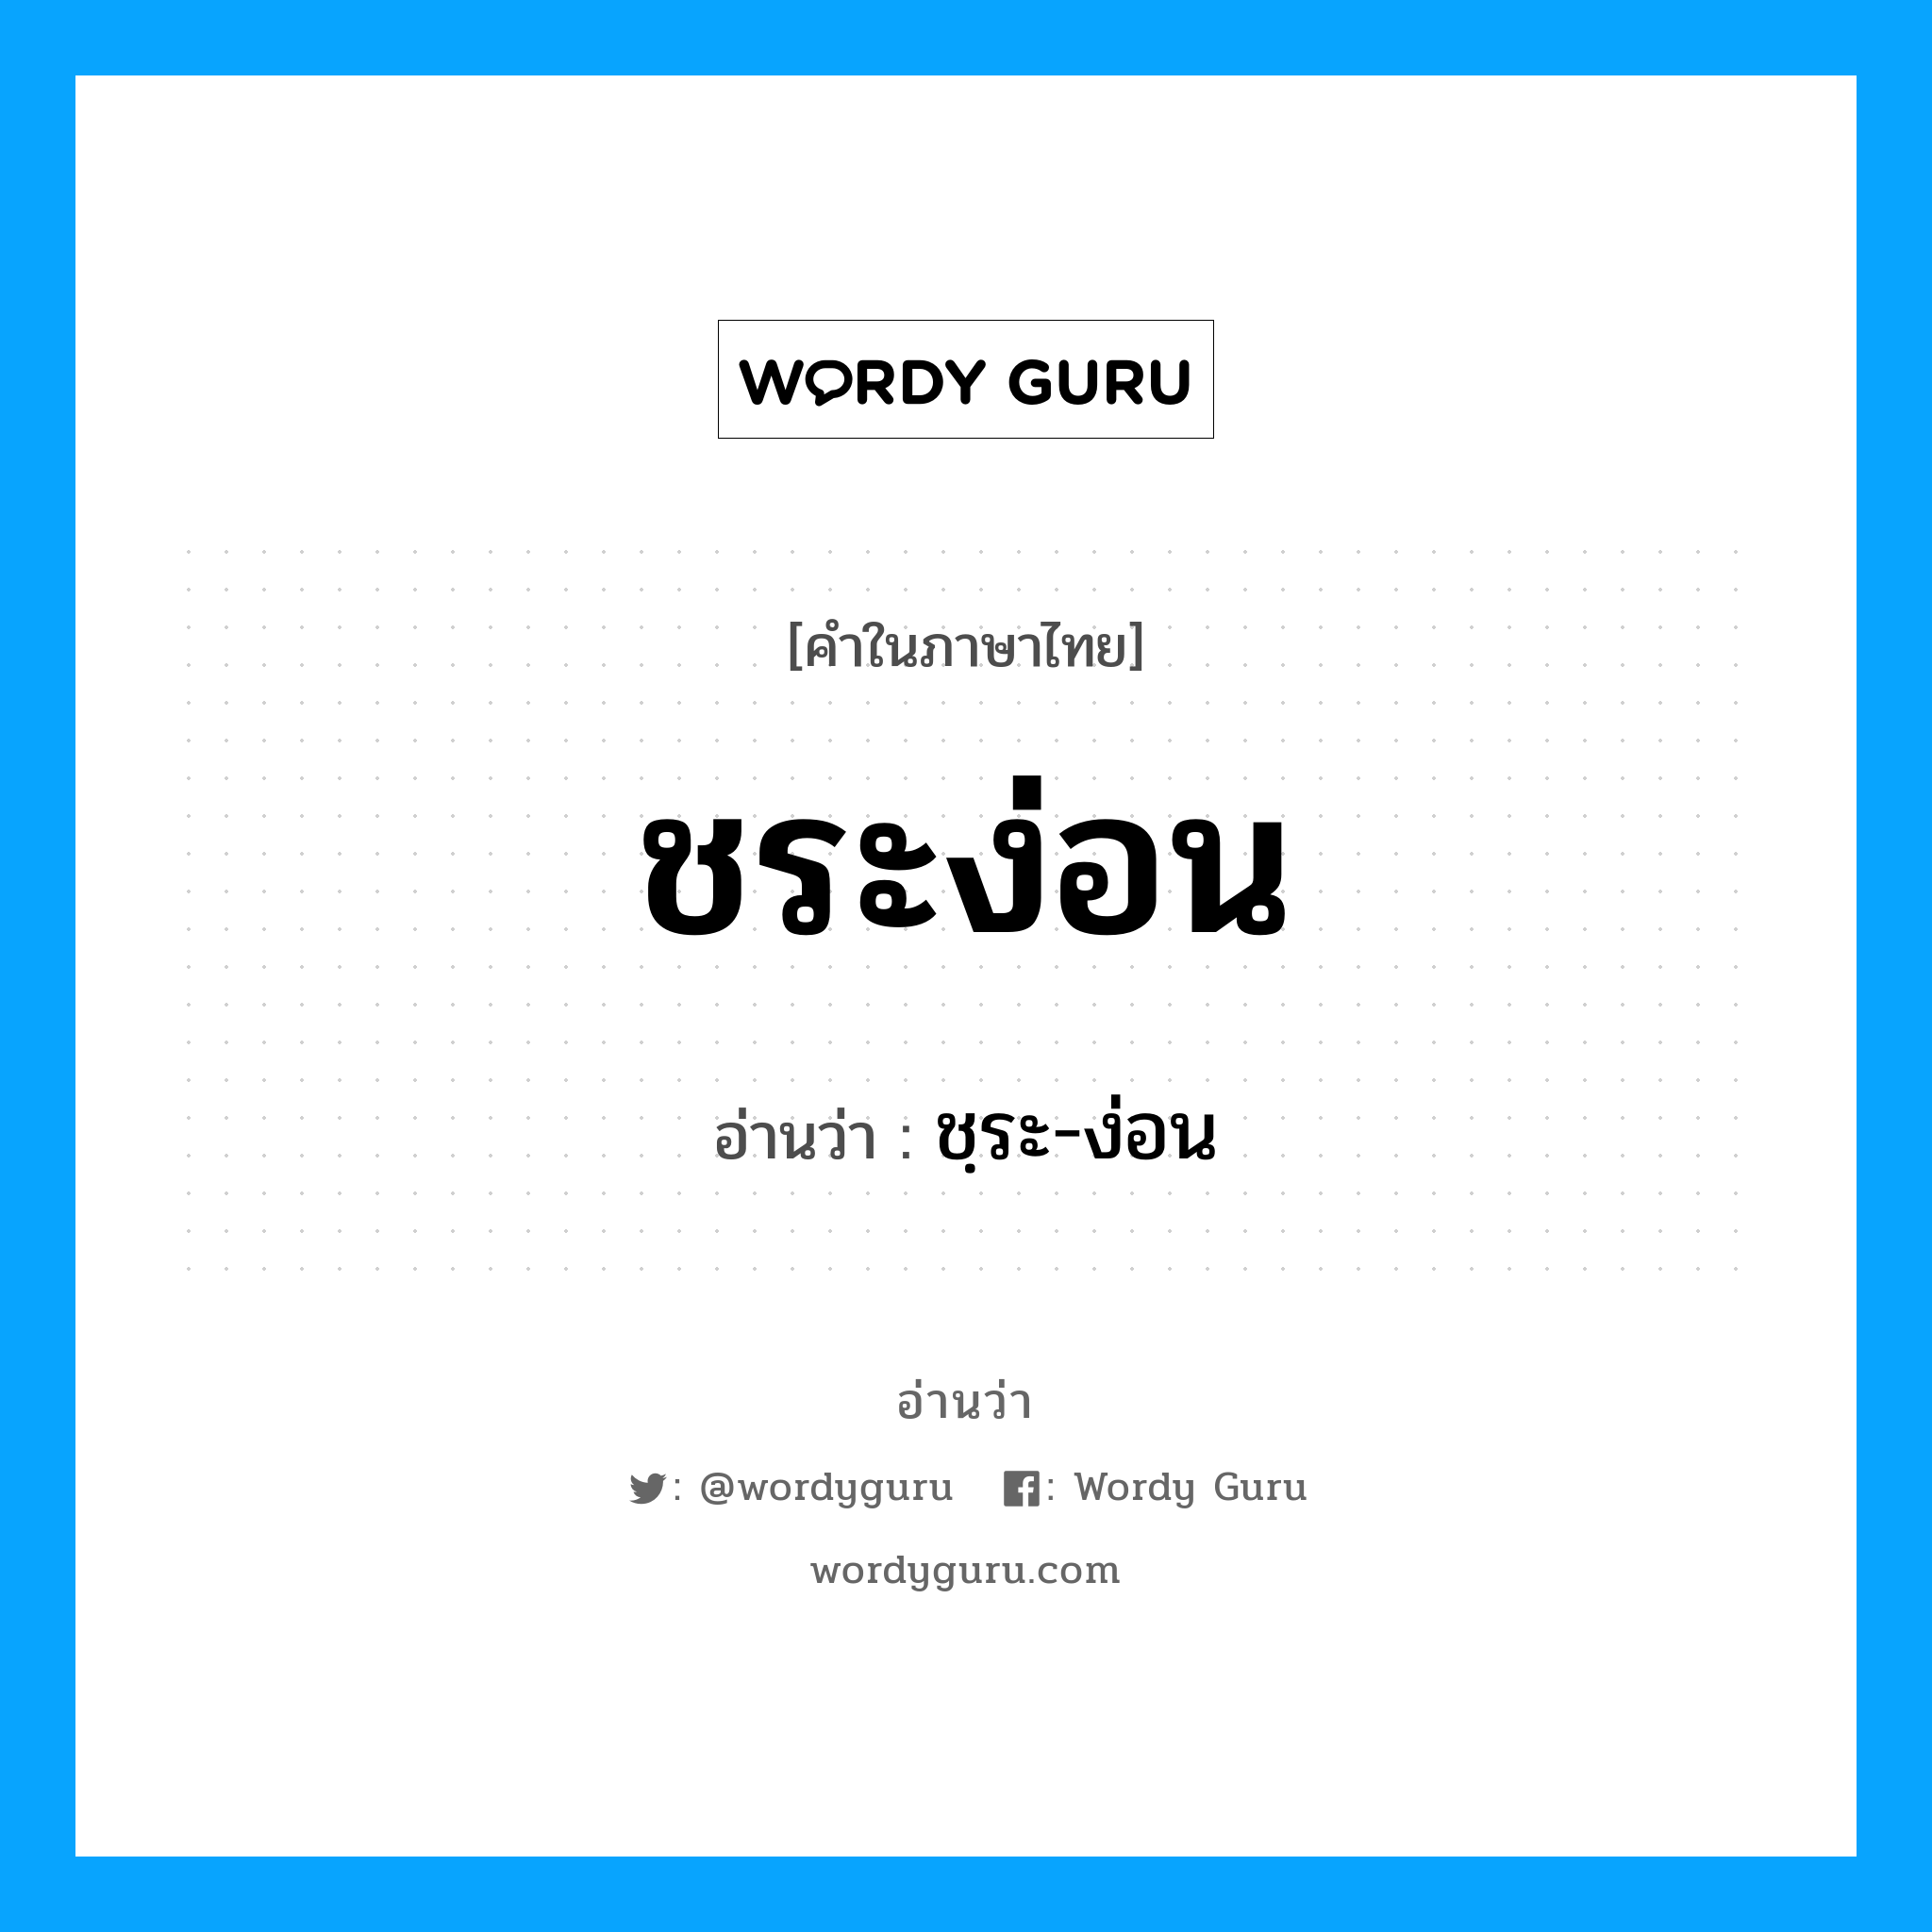 ชฺระ-ง่อน เป็นคำอ่านของคำไหน?, คำในภาษาไทย ชฺระ-ง่อน อ่านว่า ชระง่อน